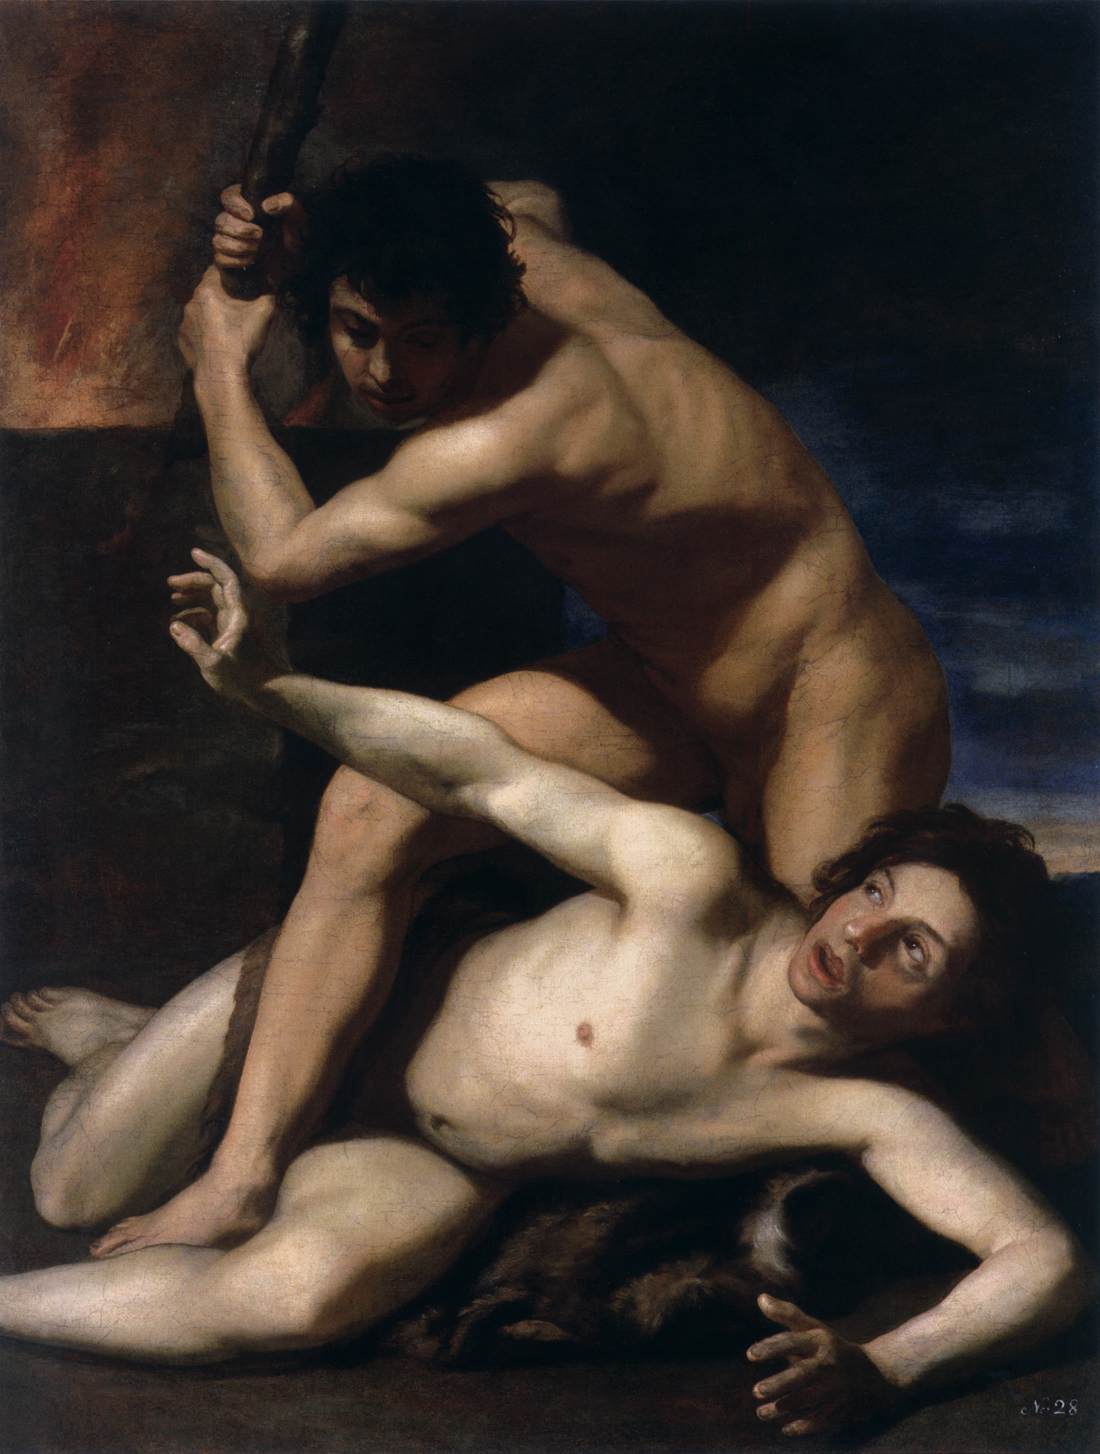 Kain zabija Abla